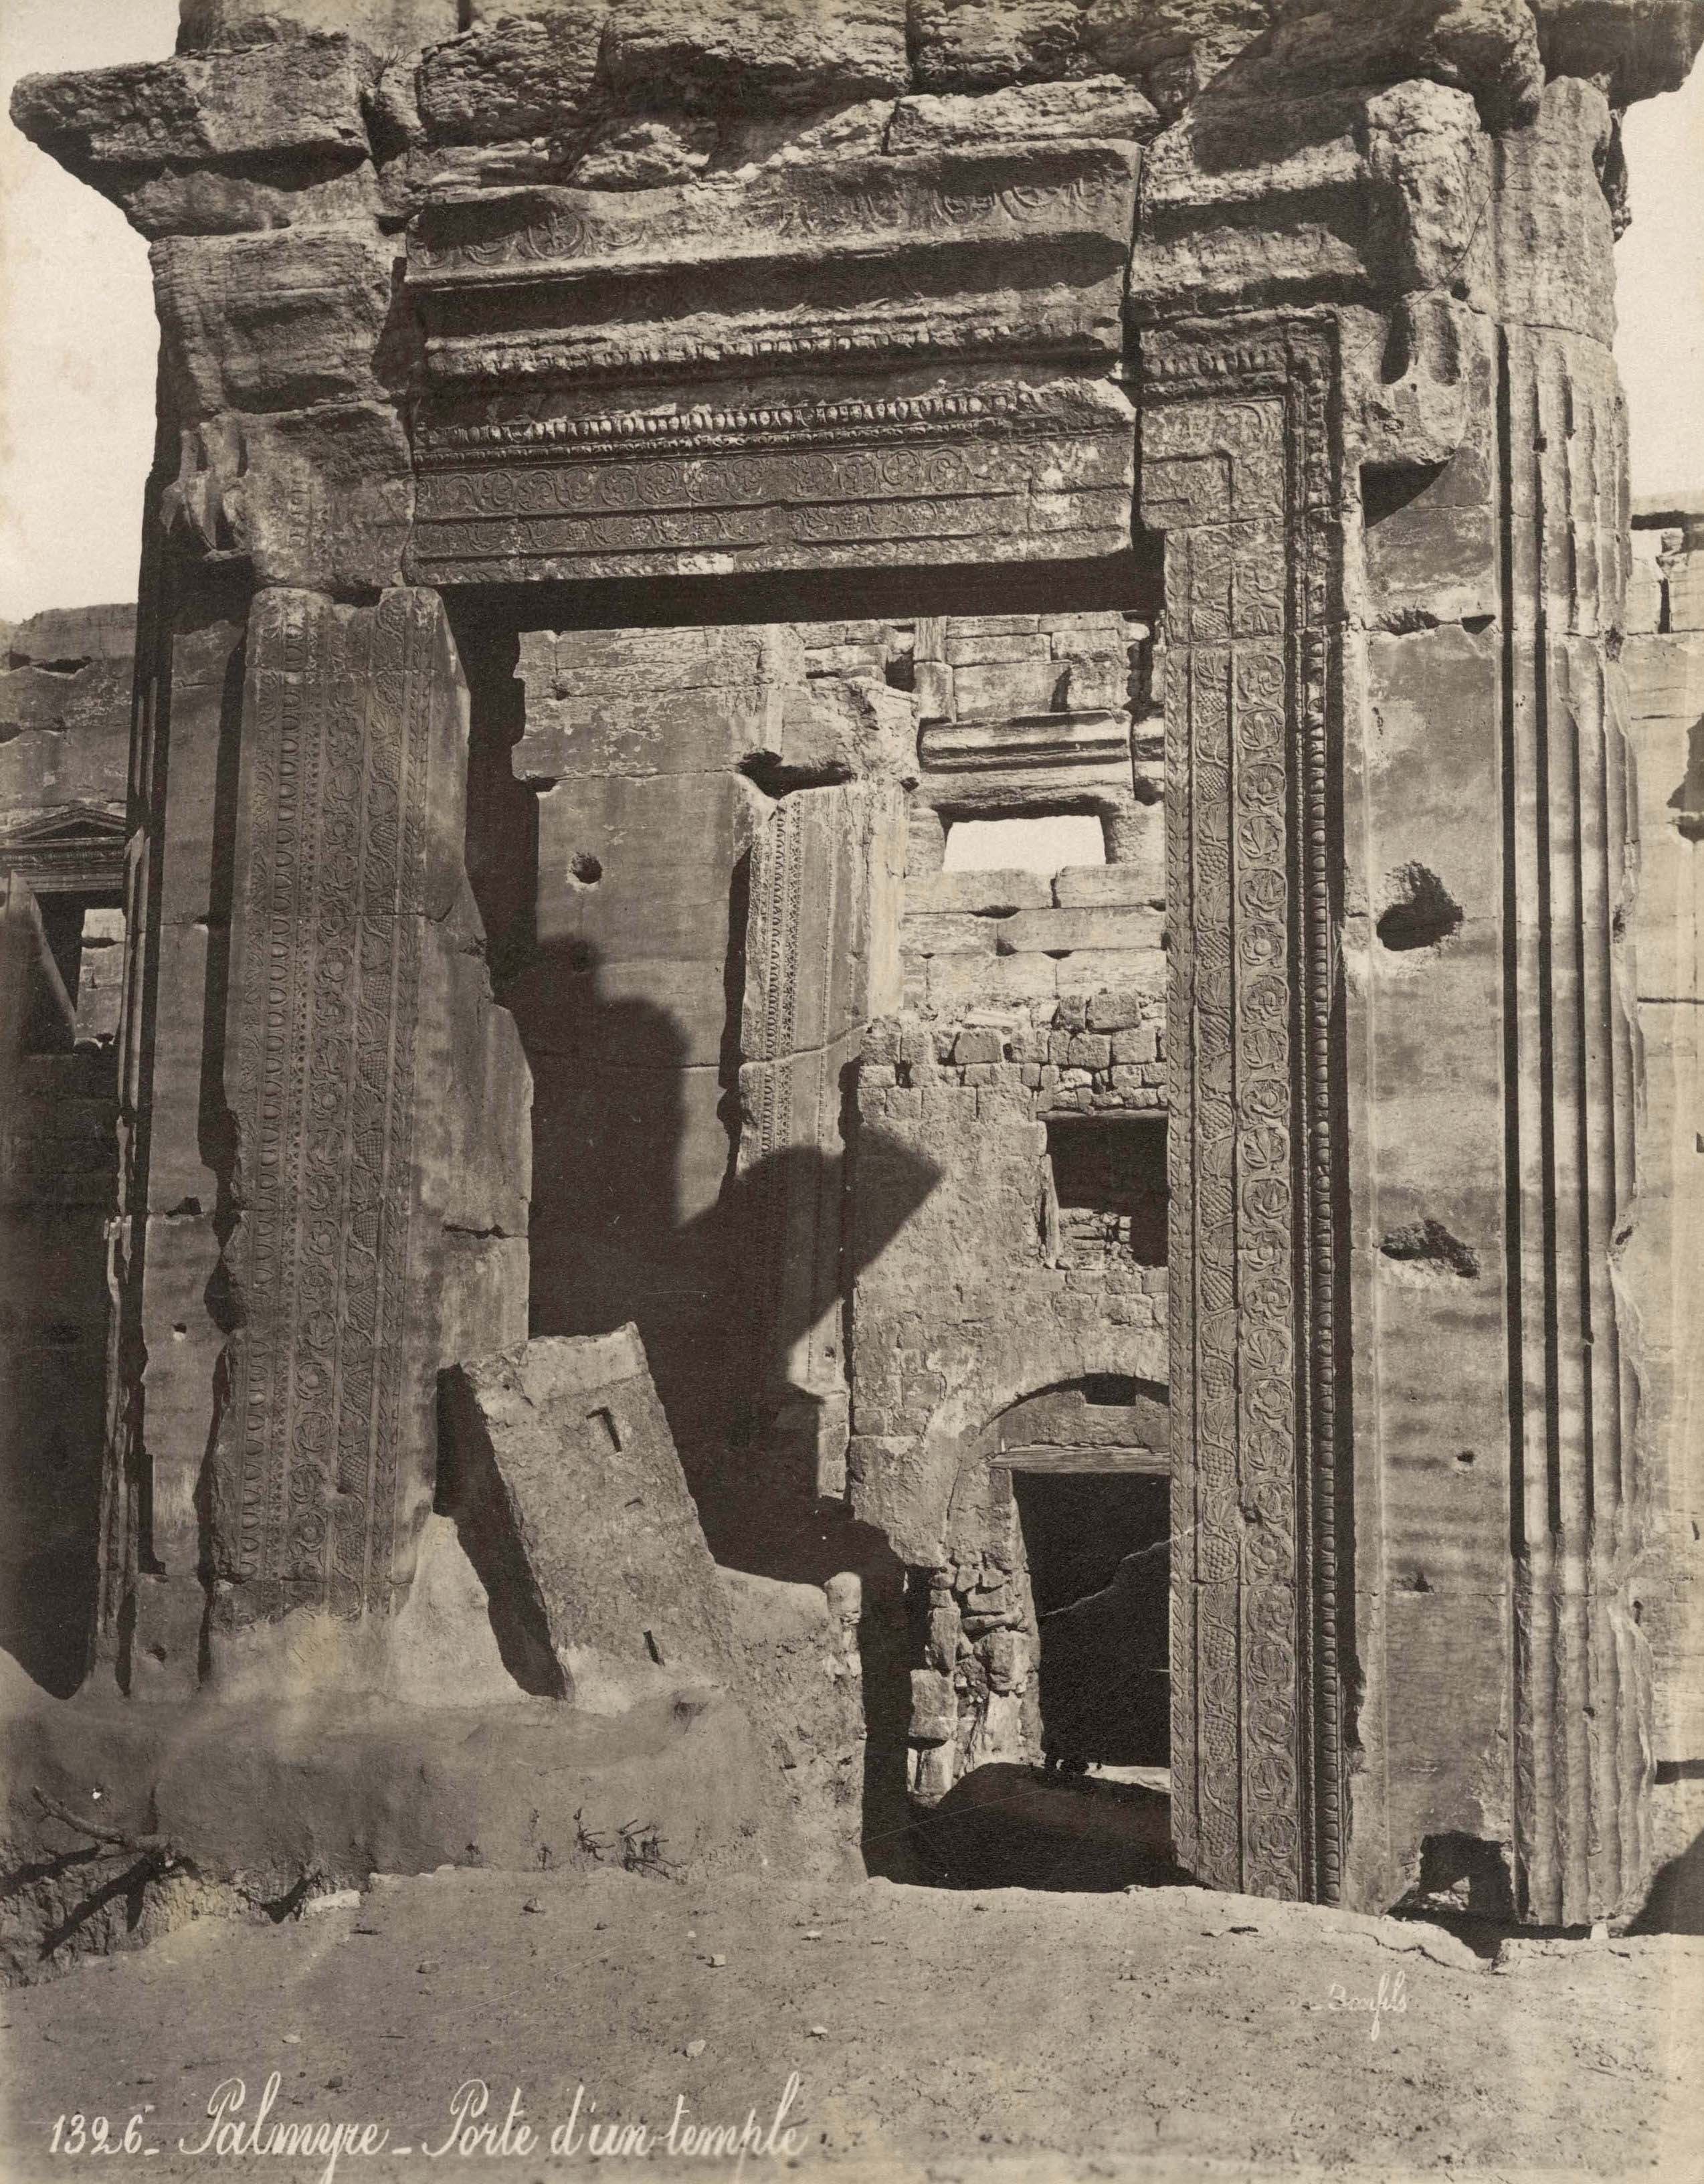 ANCIENT PALMYRA RUINS